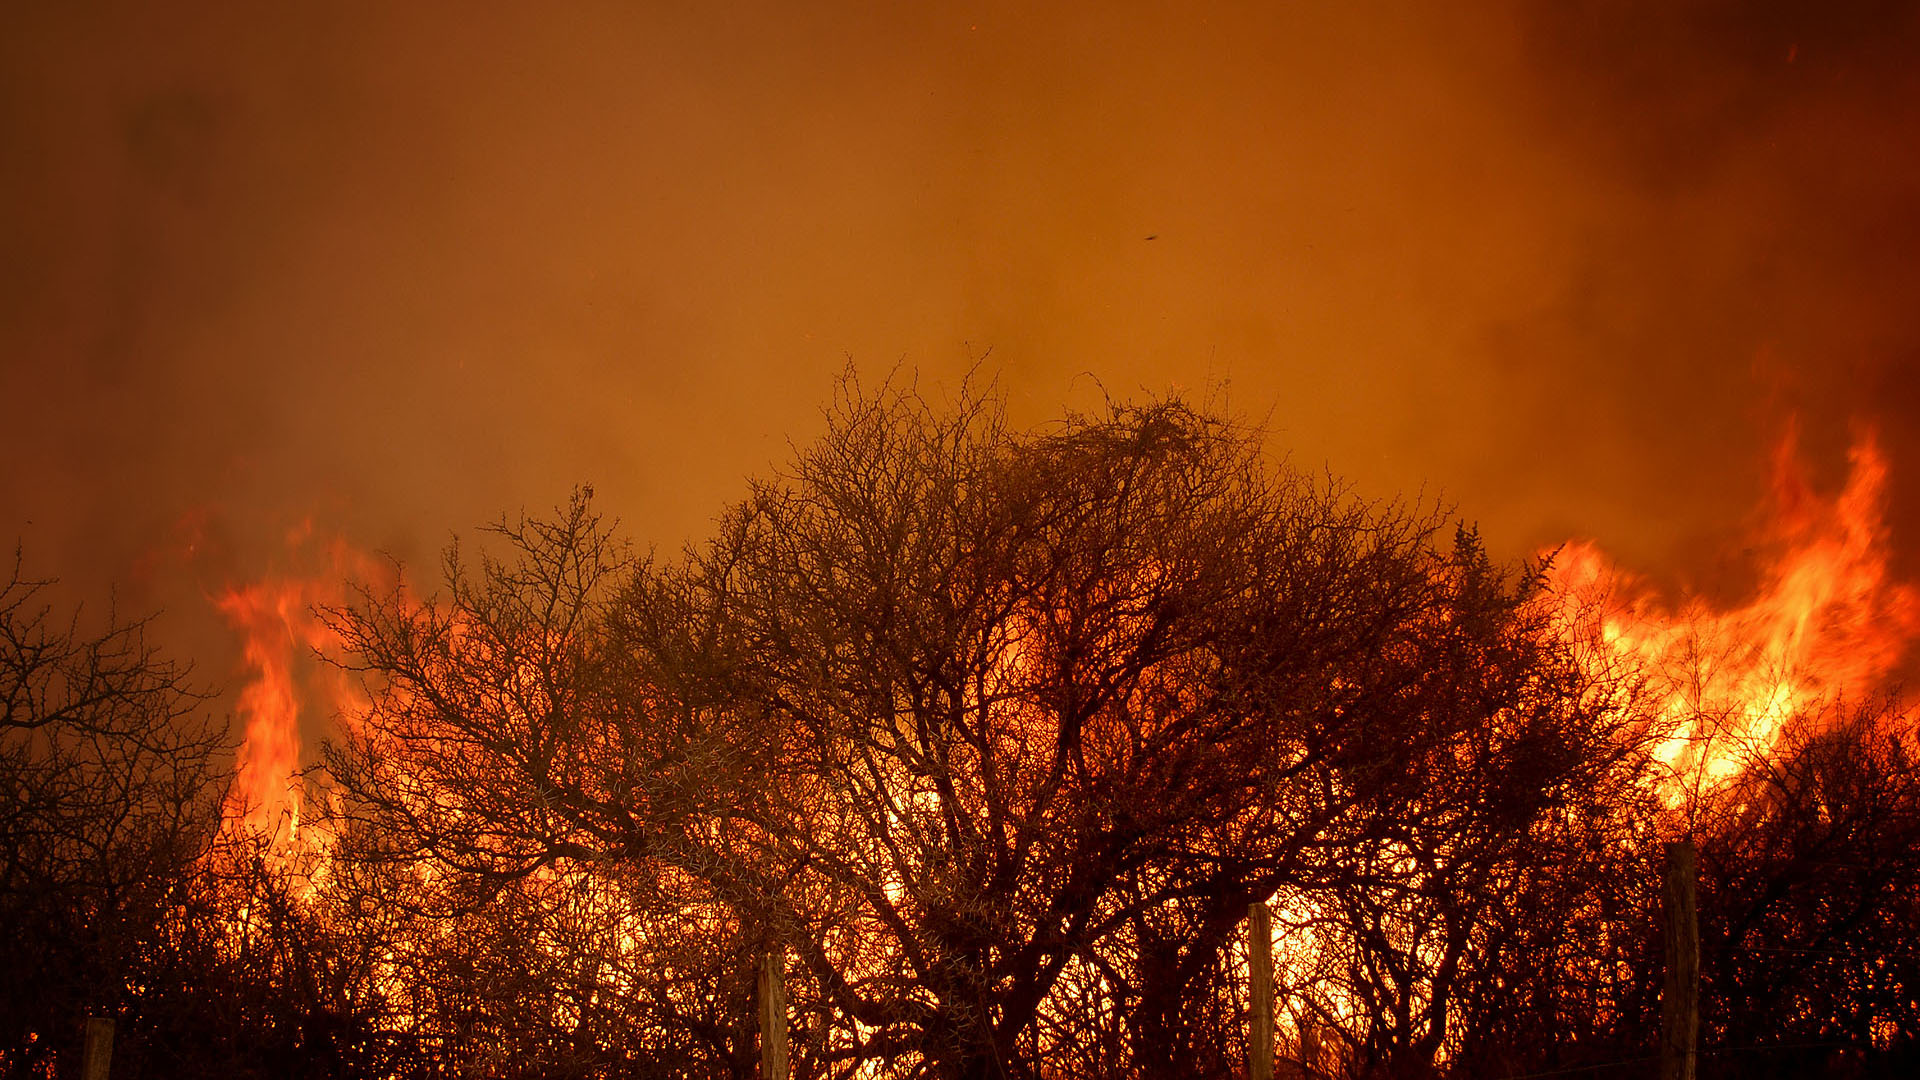 El director de la Regional Córdoba del Instituto Nacional de Tecnología Agropecuaria, Juan Cruz Molina, manifestó este domingo que los incendios forestales ya quemaron alrededor de 191.000 hectáreas en la provincia (Mario Sar)